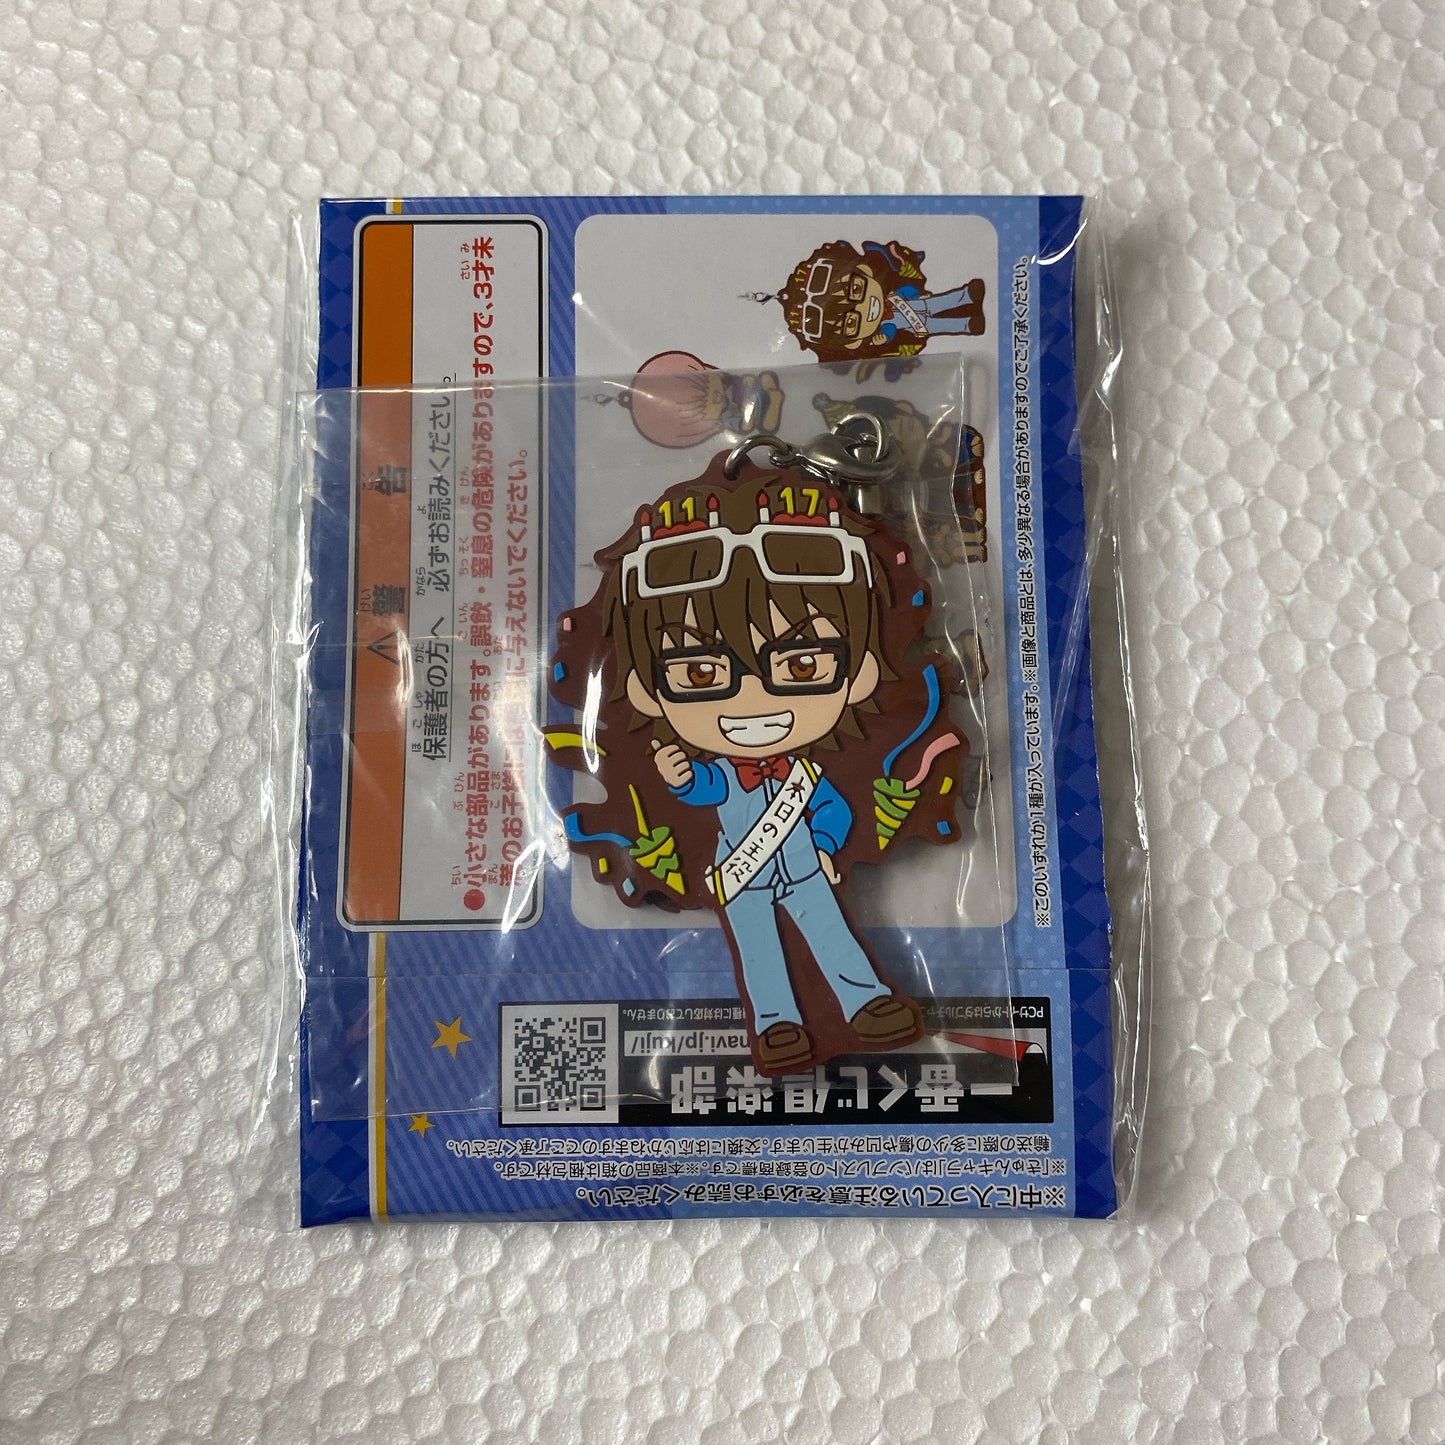 "Ace of Diamond" Ichiban Kuji Rubber Mascot Kazuya Miyukus